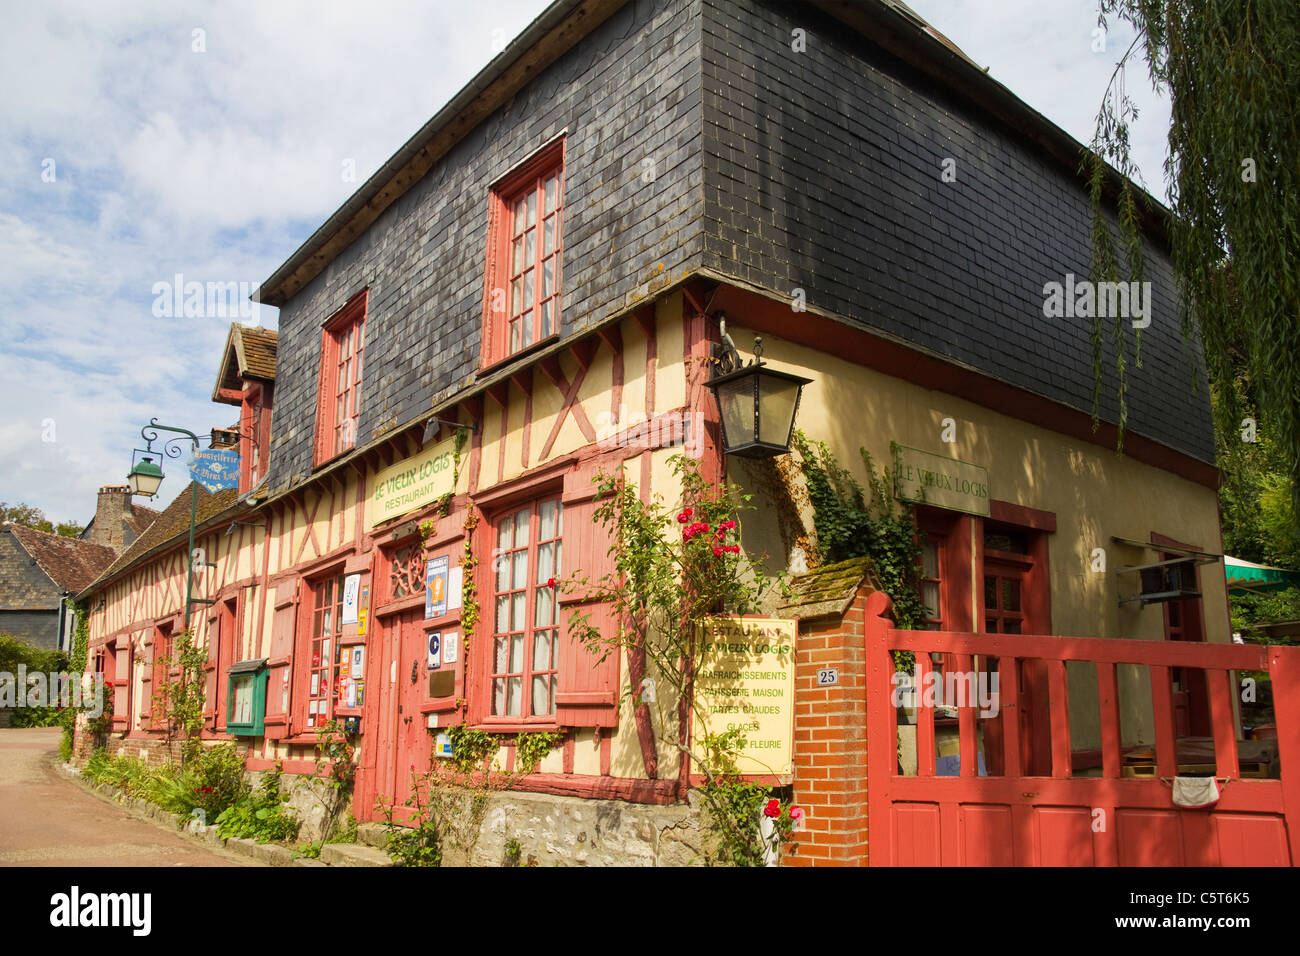 Le Vieux Logis Restaurant, Gerberoy Village, France Stock Photo